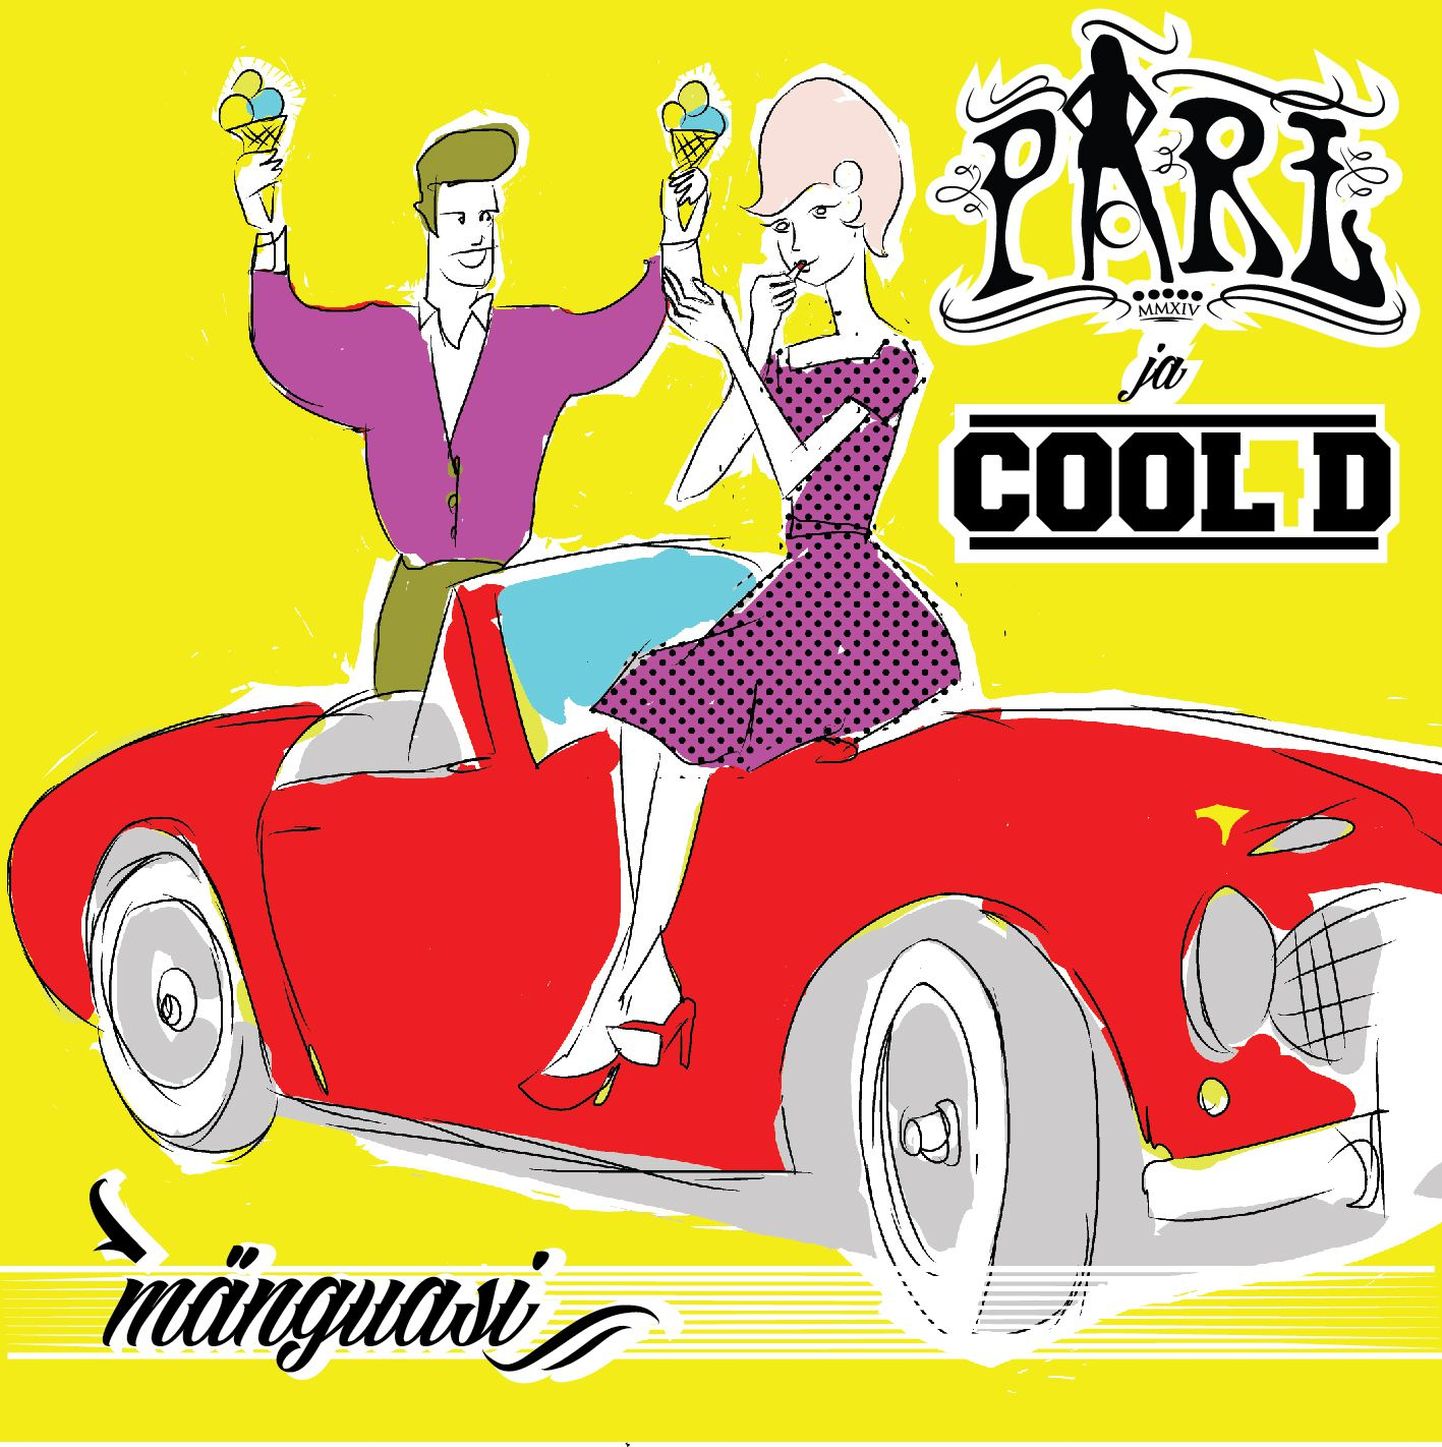 Ansambel Pärl avaldas koostöös Cool D-ga uue kelmika loo «Mänguasi»